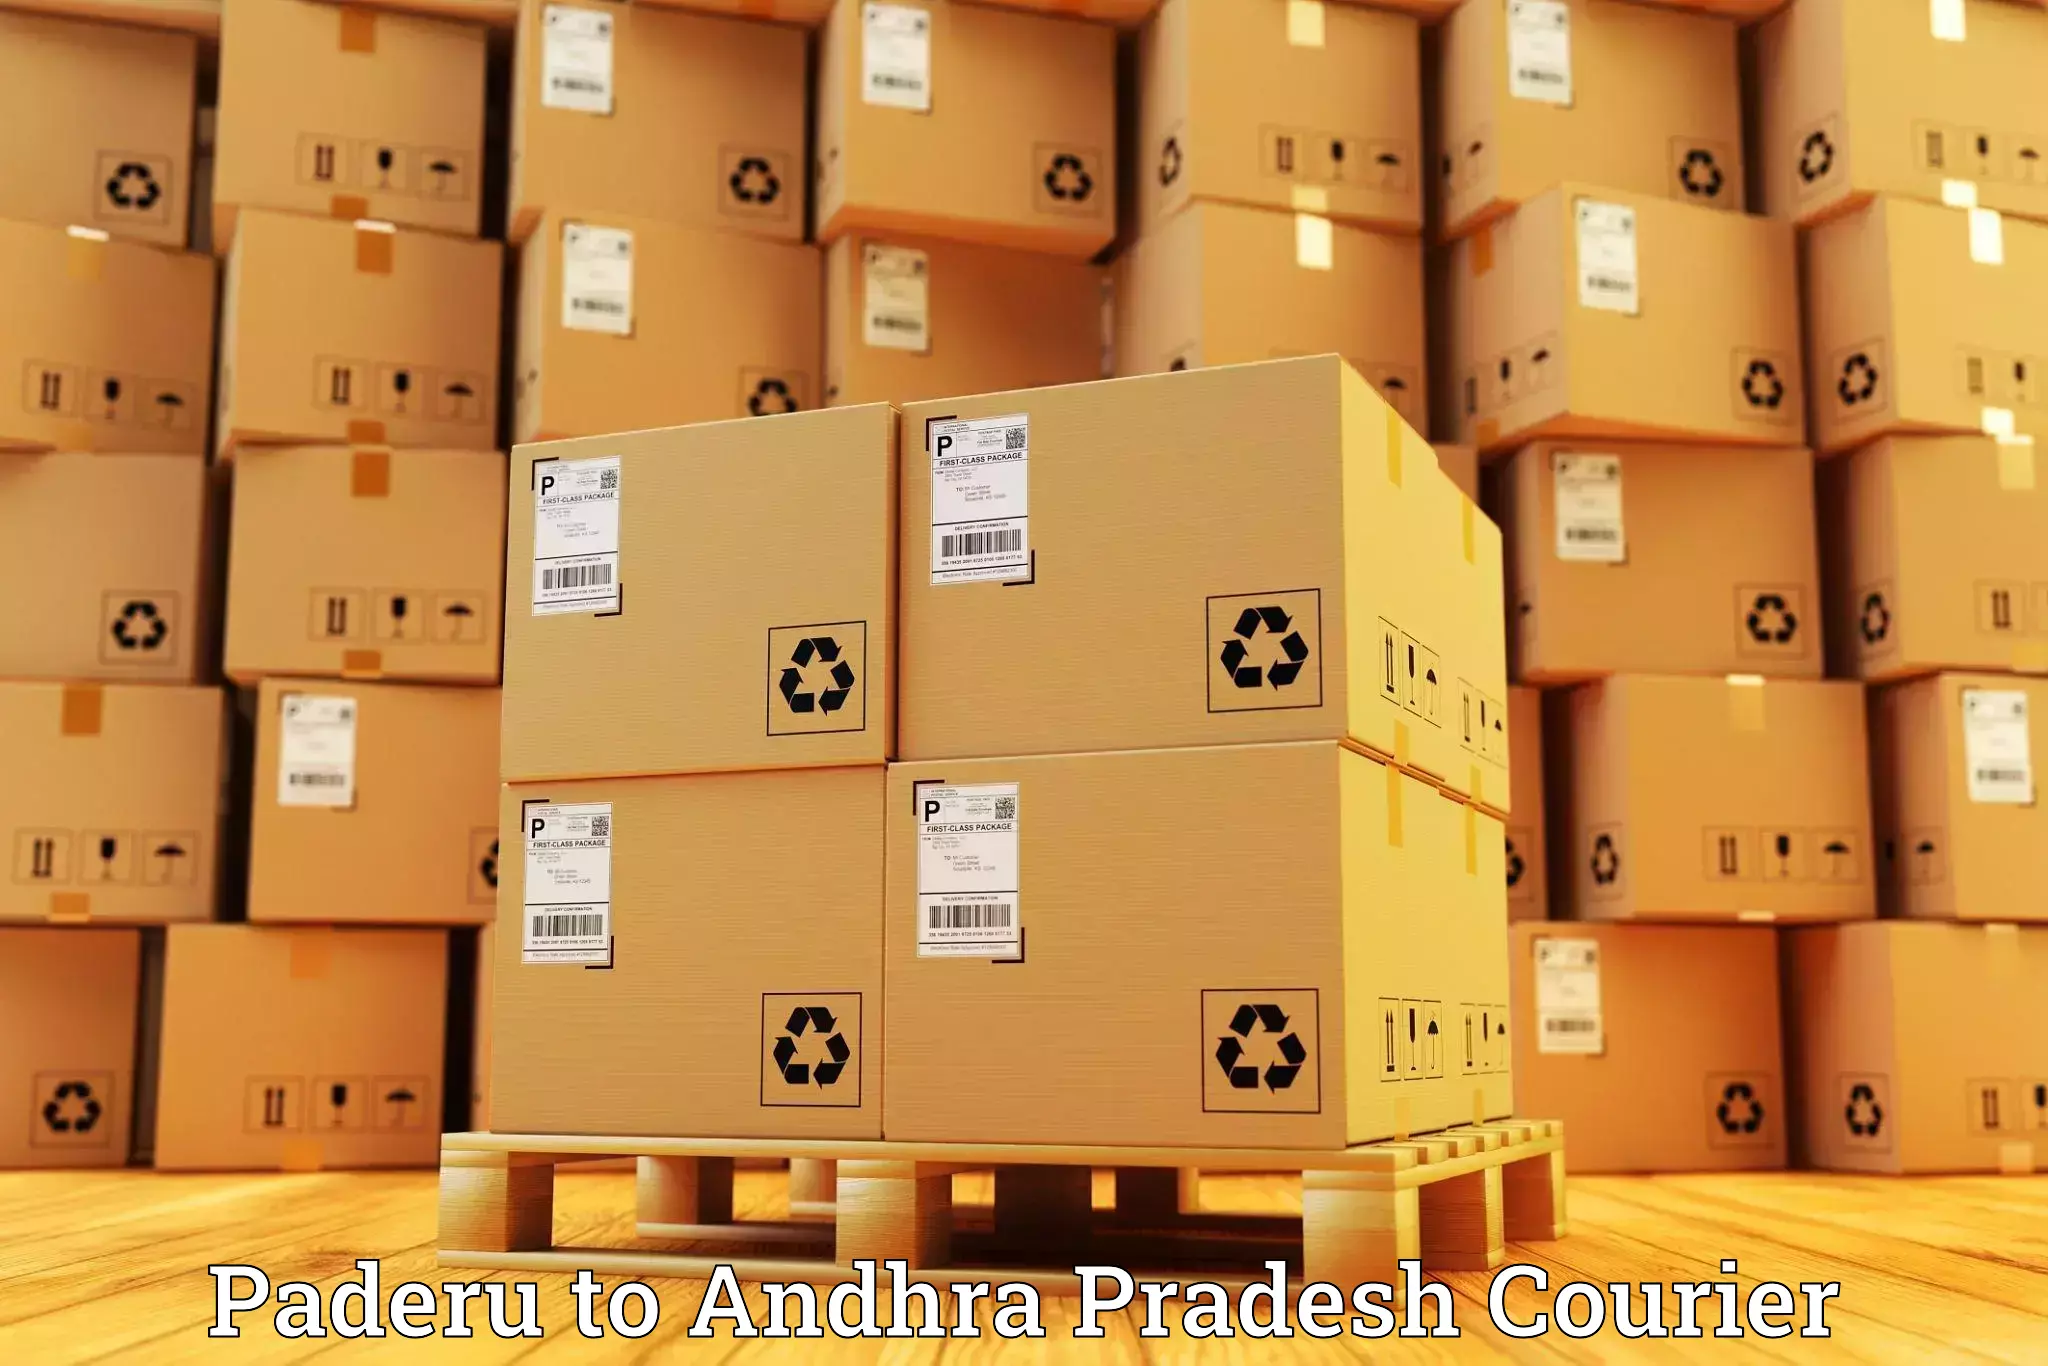 High-speed parcel service Paderu to Andhra Pradesh